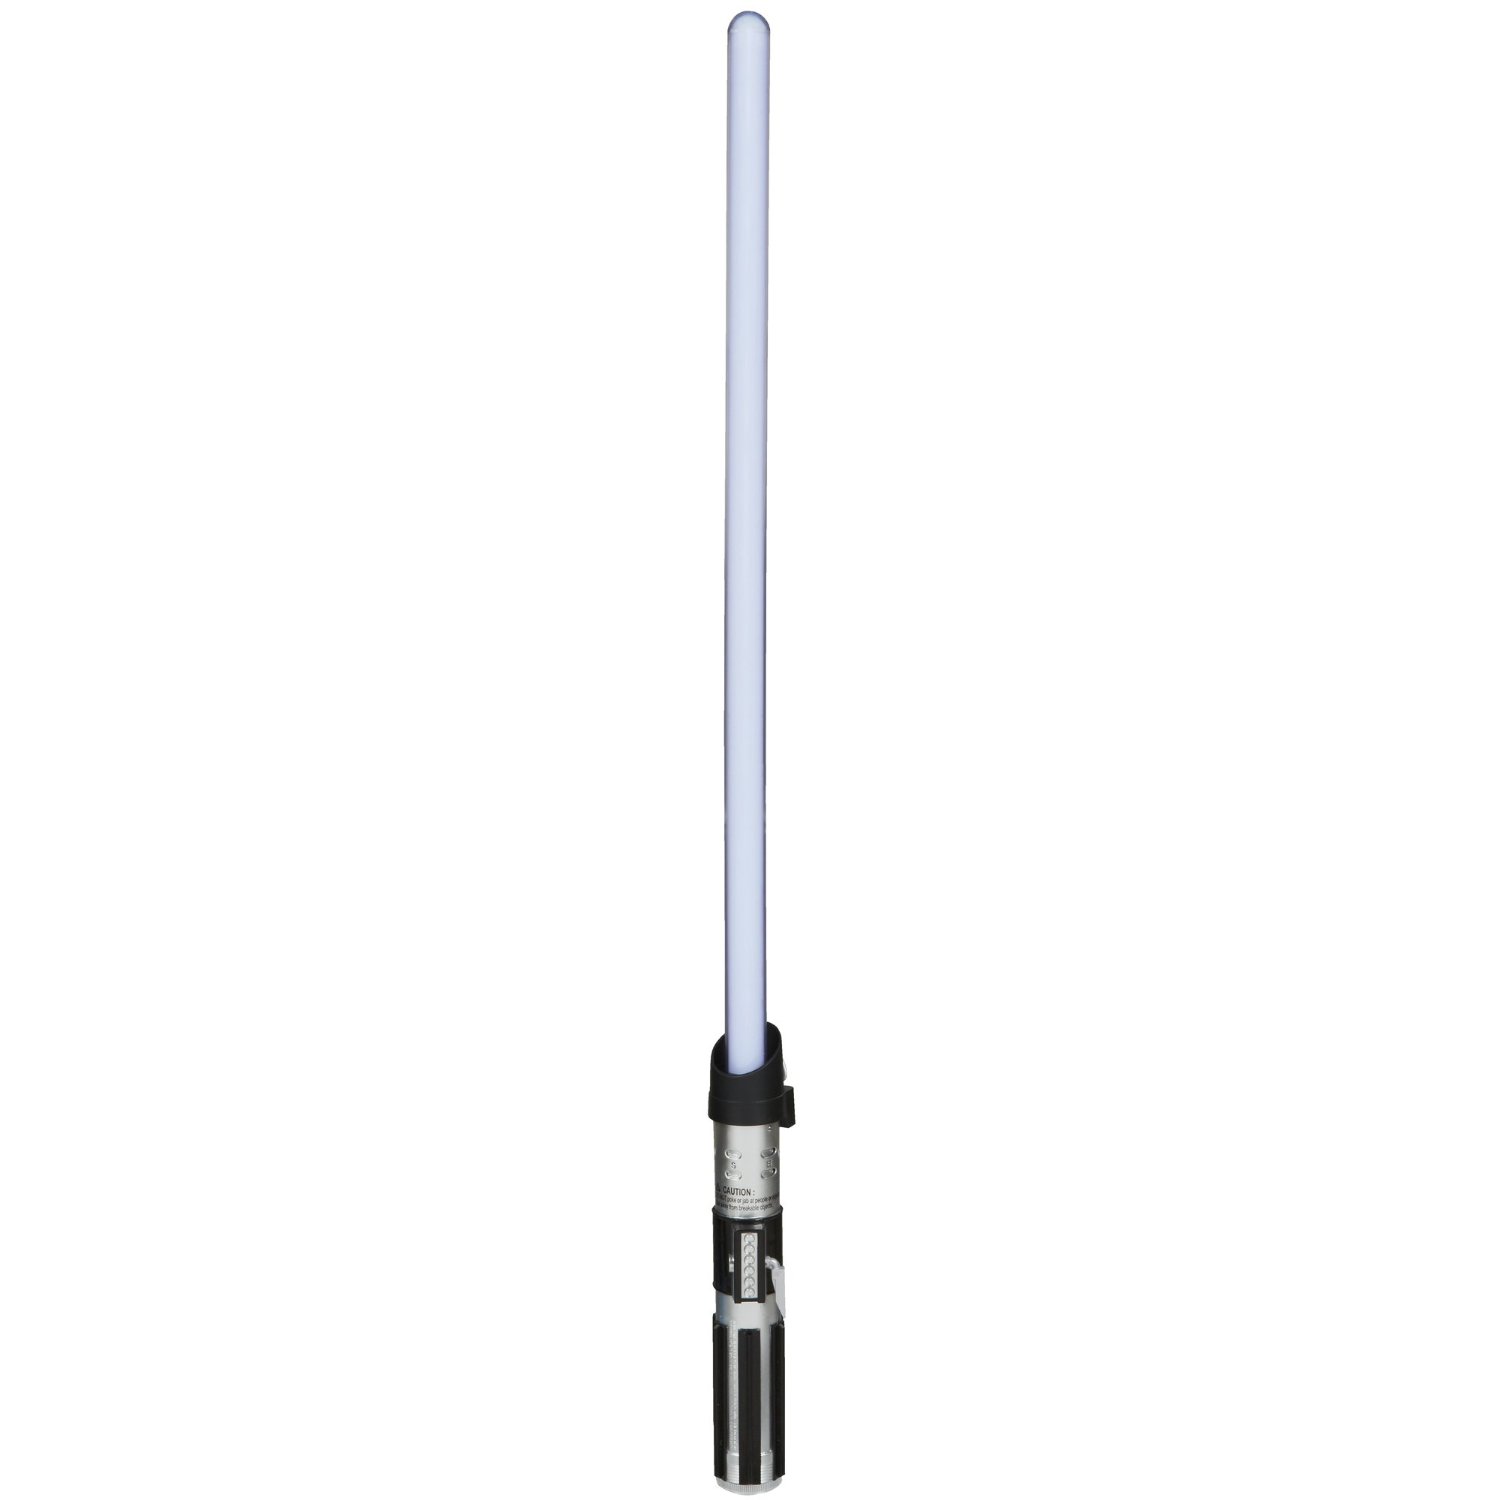 lightsaber clipart light saber